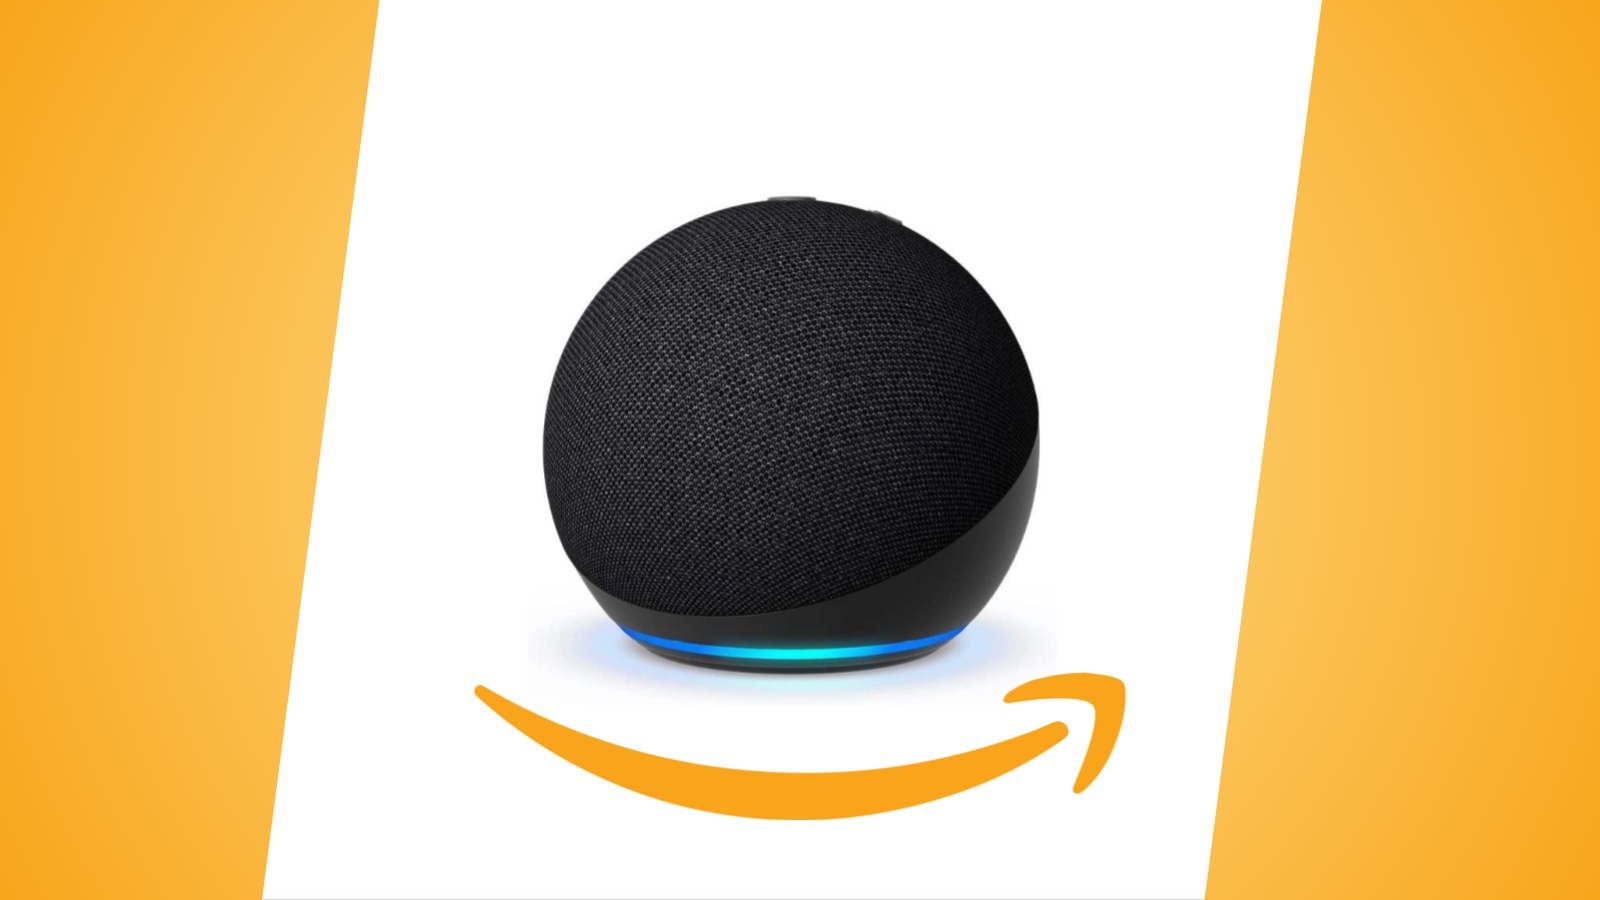 Offerte Amazon: Echo Dot 5ª generazione, due dispositivi al prezzo di uno per gli abbonati Prime